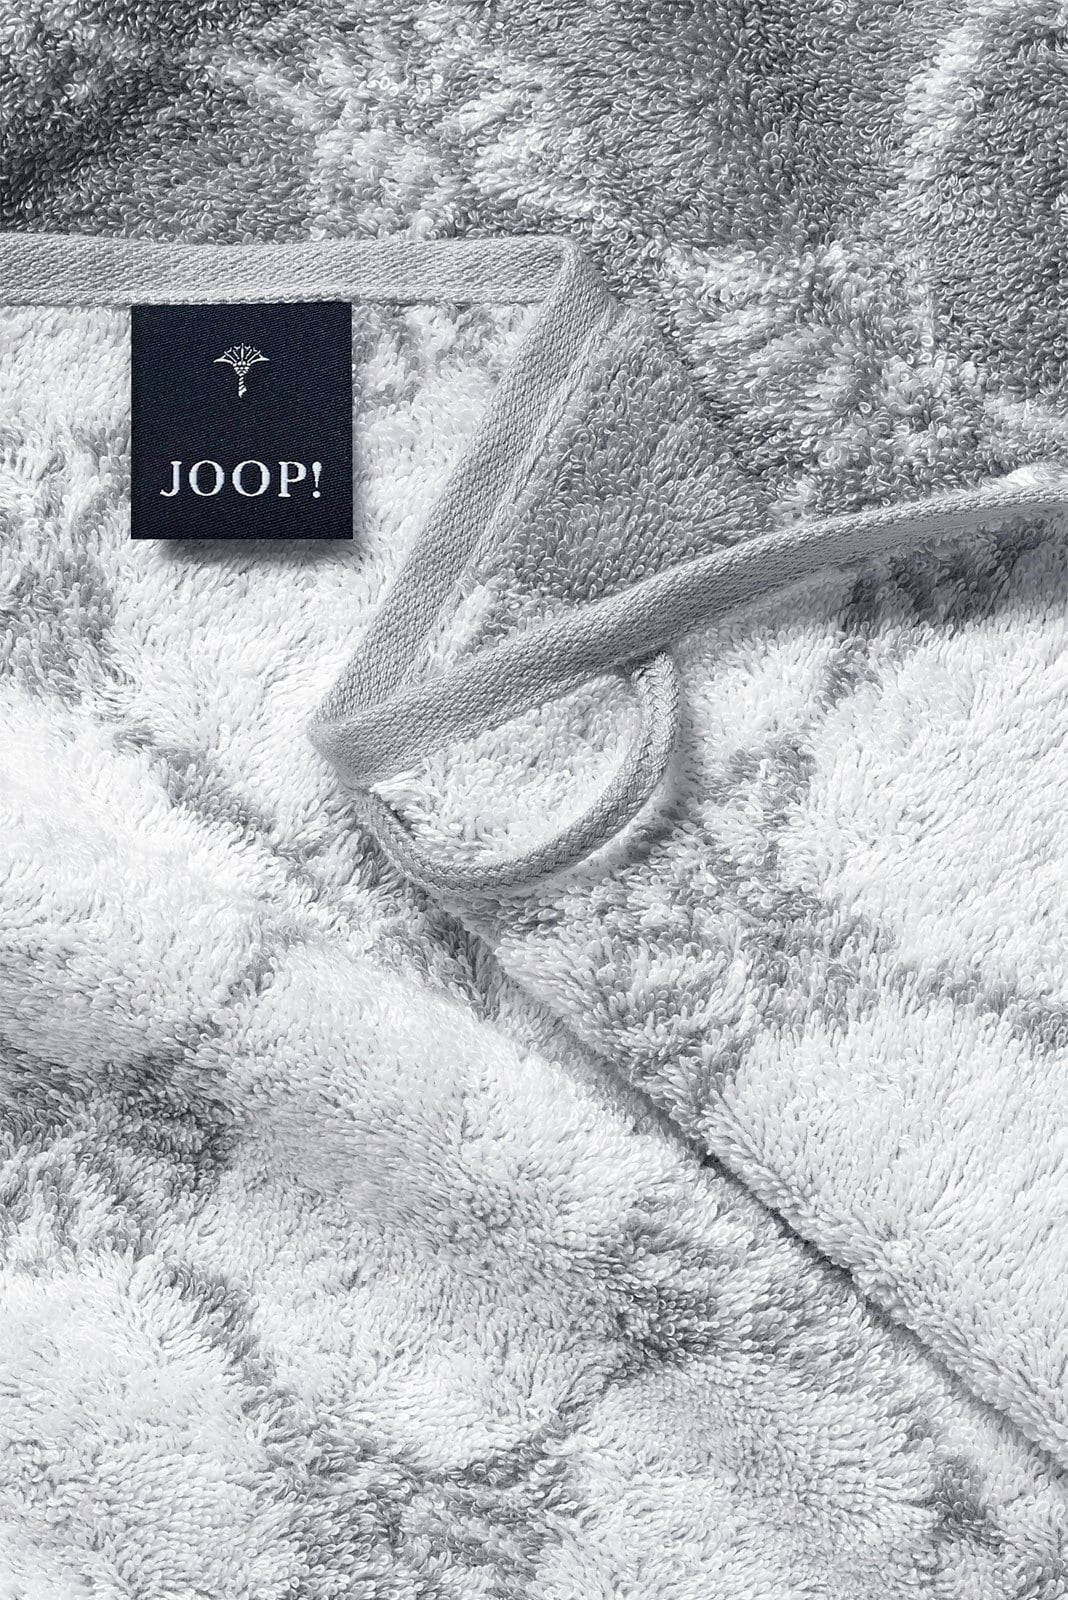 JOOP! Handtuch BLACK & WHITE CORNFLOWER 50 x 100 cm silbergrau